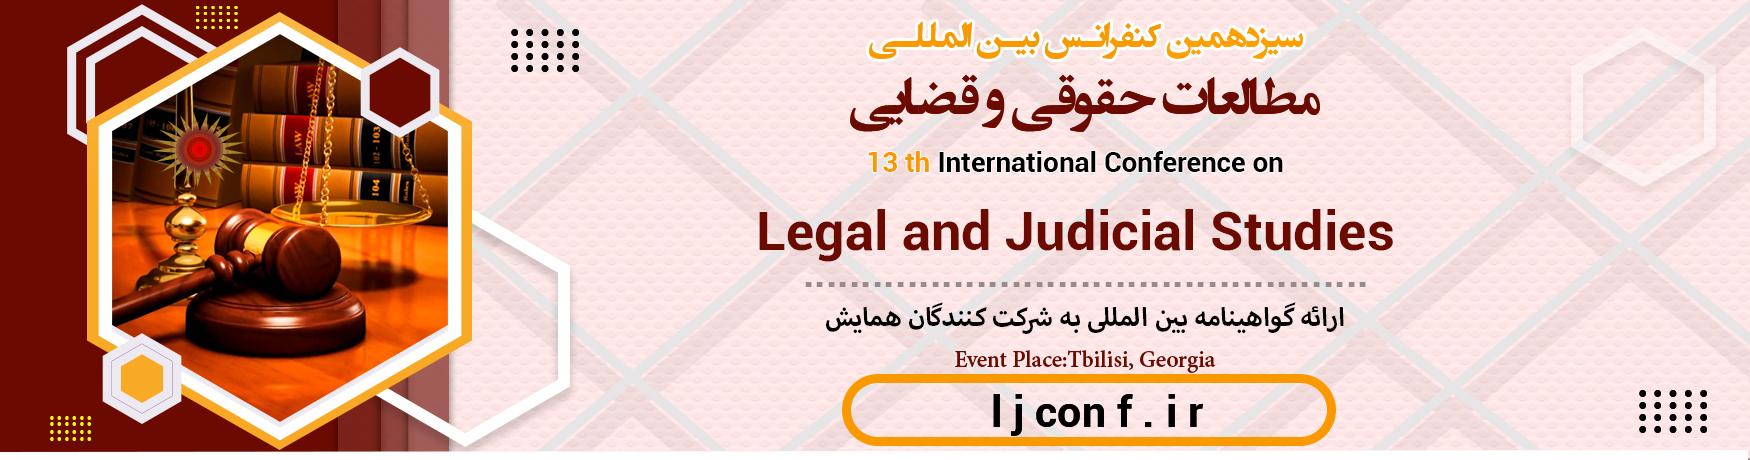 کنفرانس بین المللی مطالعات حقوقی و قضایی	